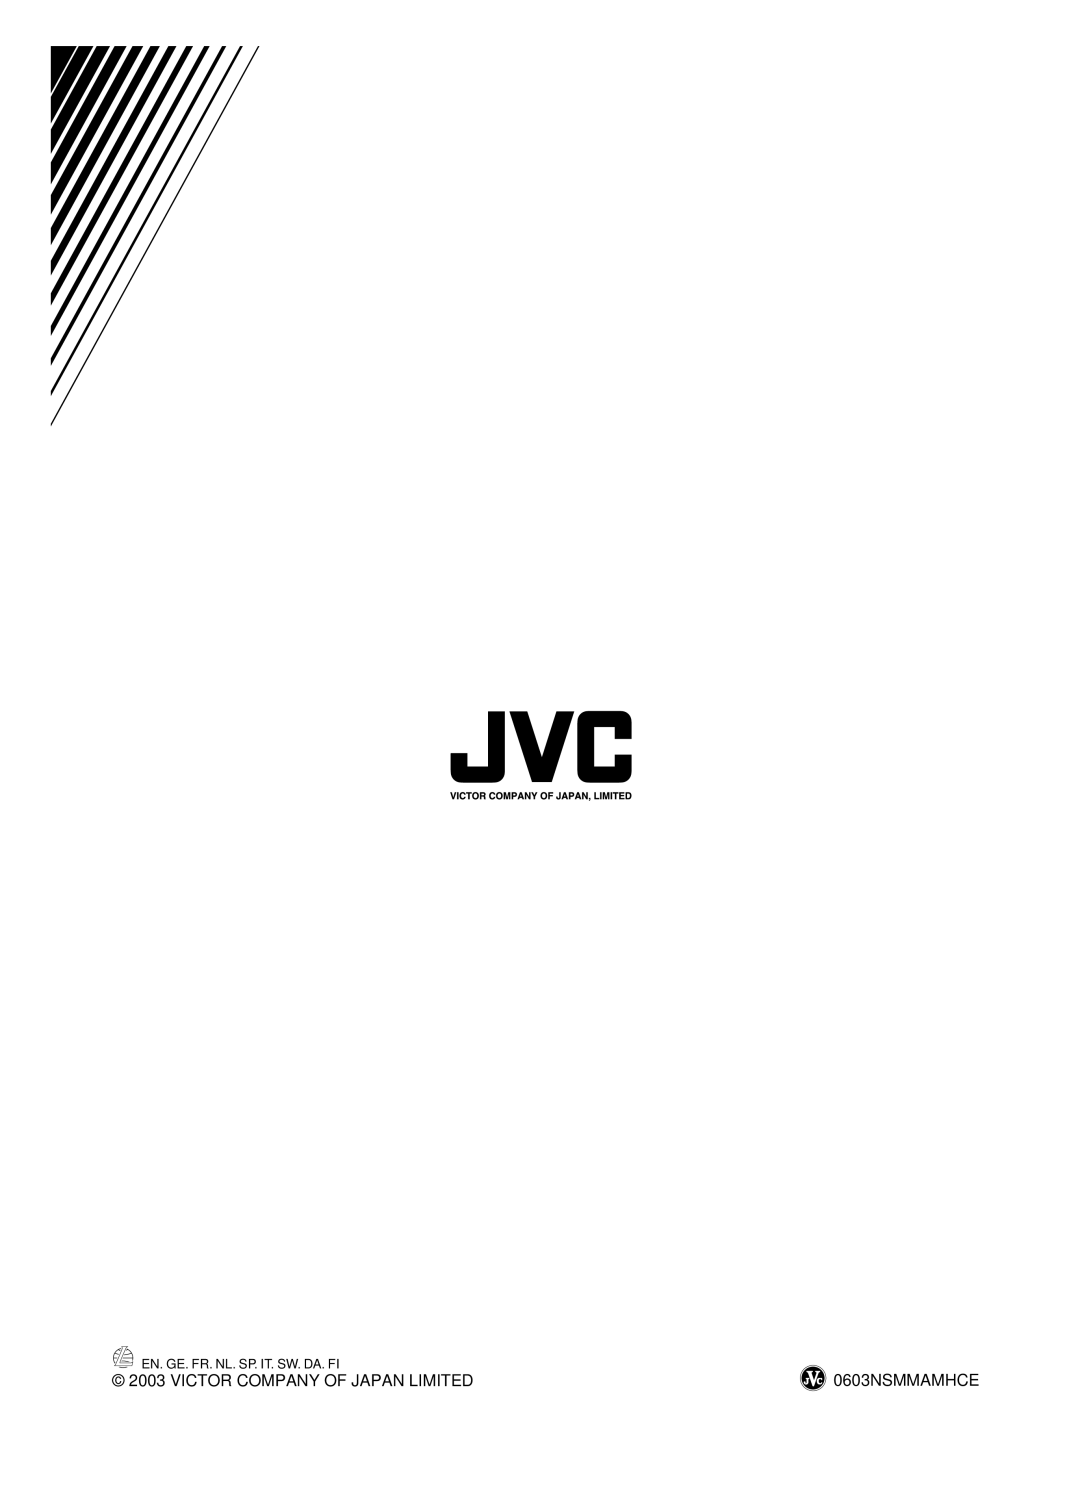 JVC SX-A305 manual Victor Company Of Japan Limited, 0603NSMMAMHCE, En. Ge. Fr. Nl. Sp. It. Sw. Da. Fi 